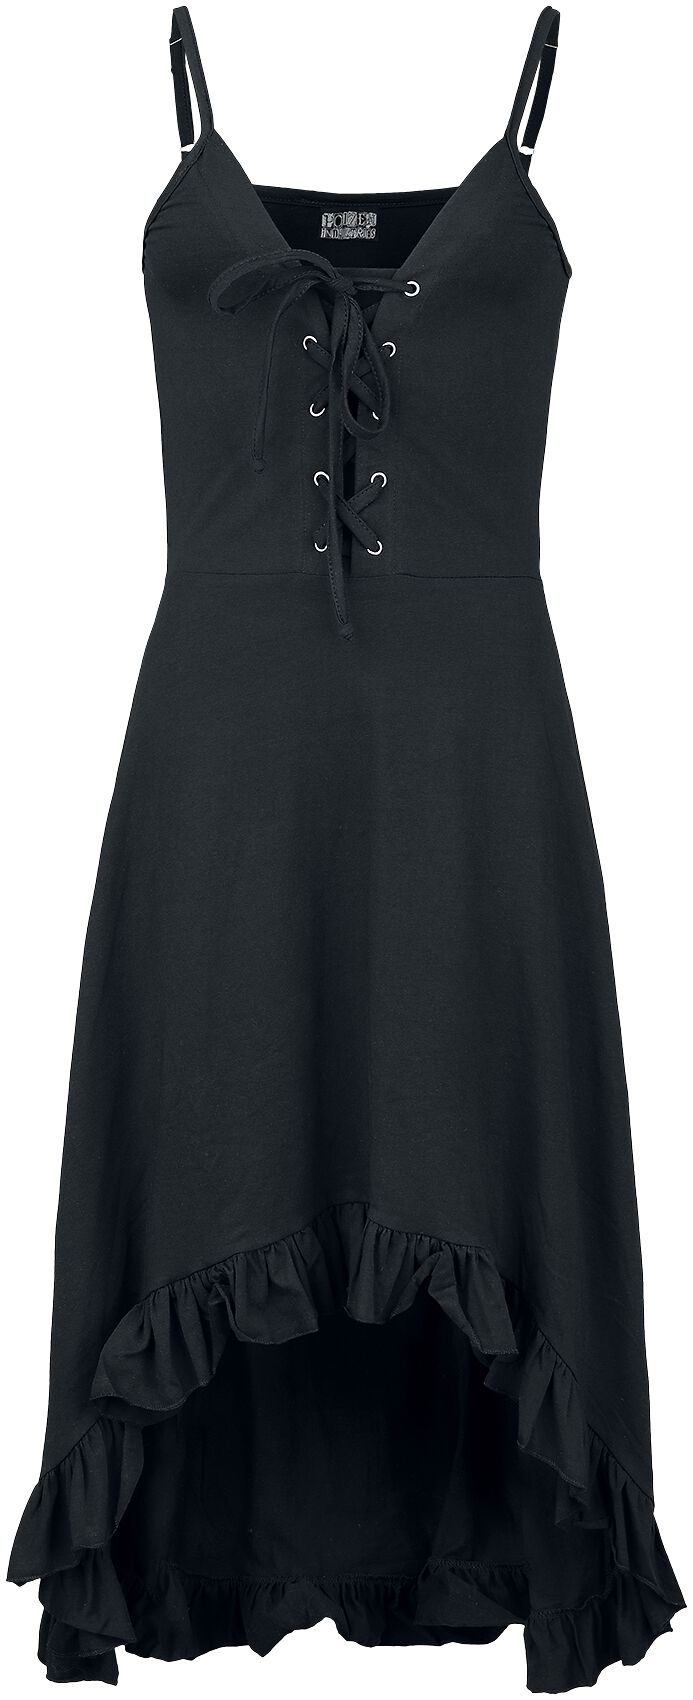 Innocent - Gothic Kurzes Kleid - Astraea Dress - S bis 4XL - für Damen - Größe XL - schwarz